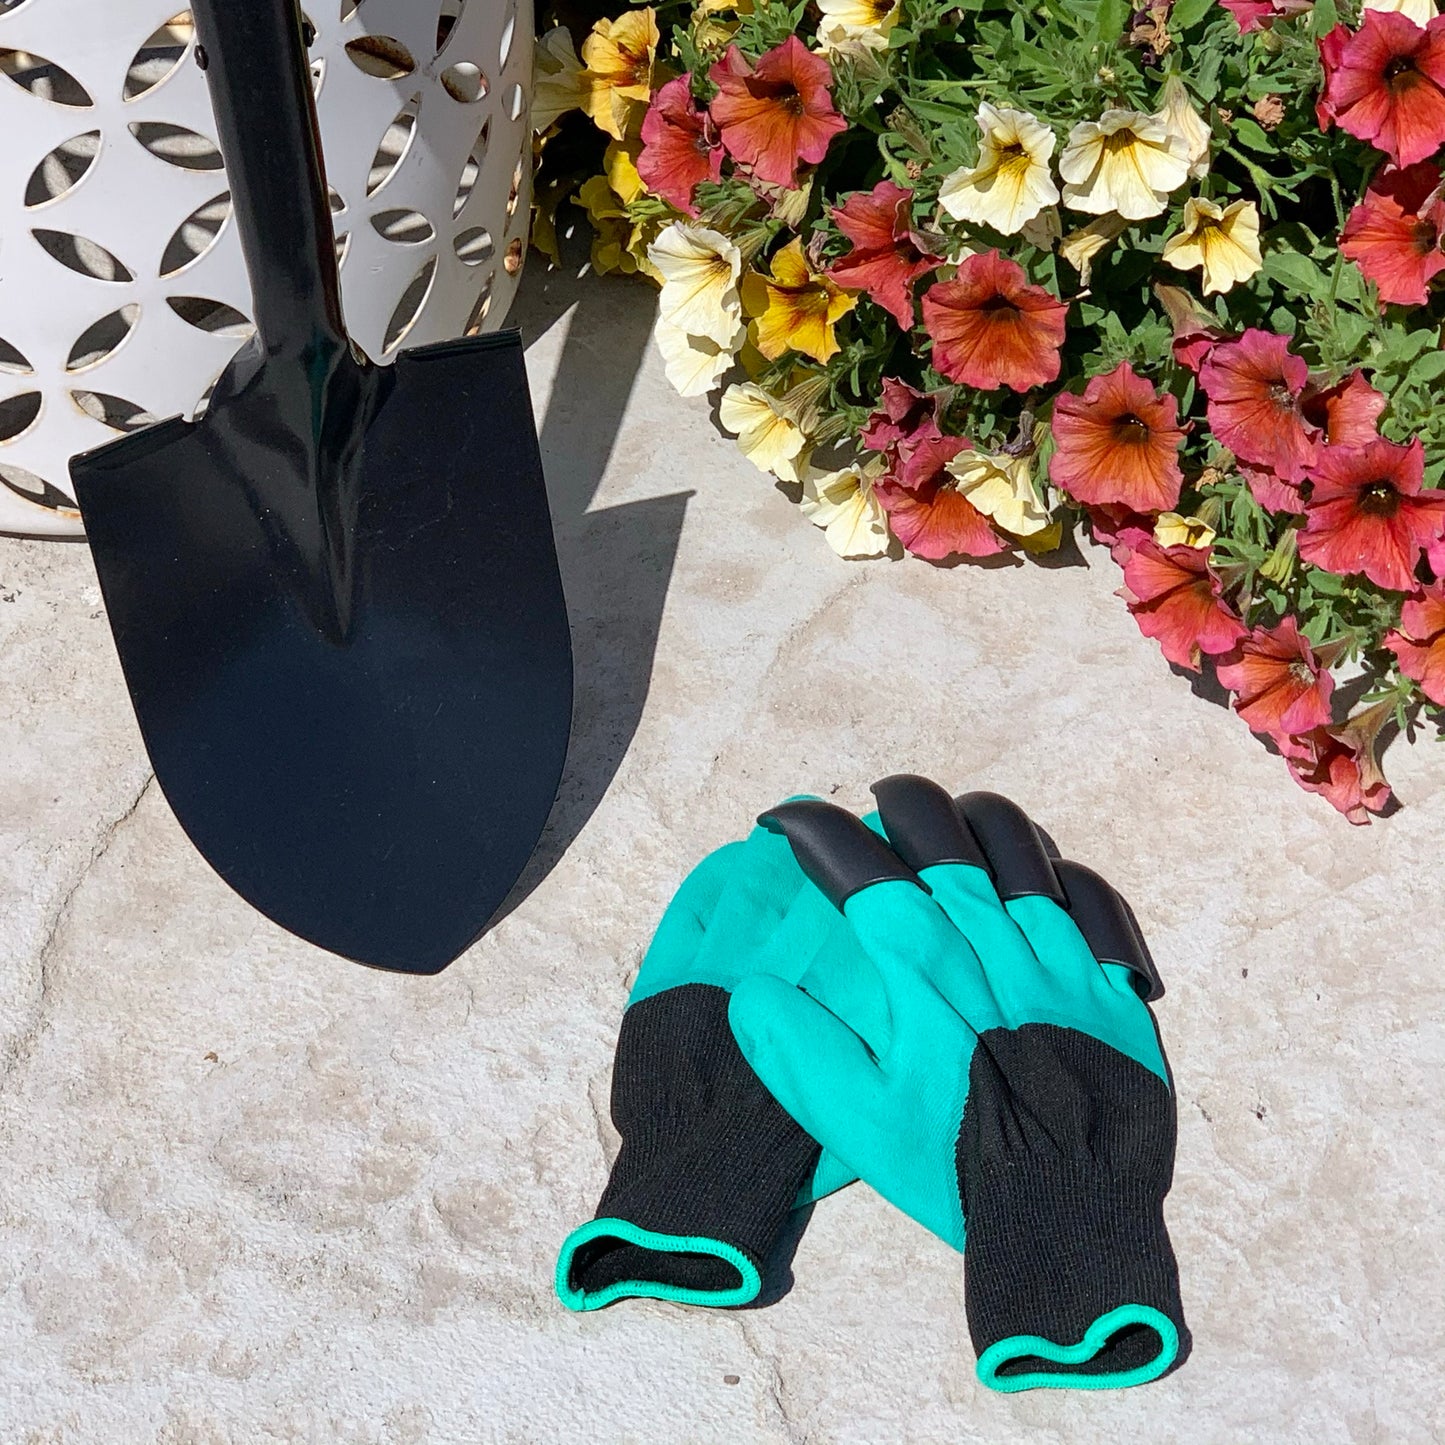 Claw Gardening Glove